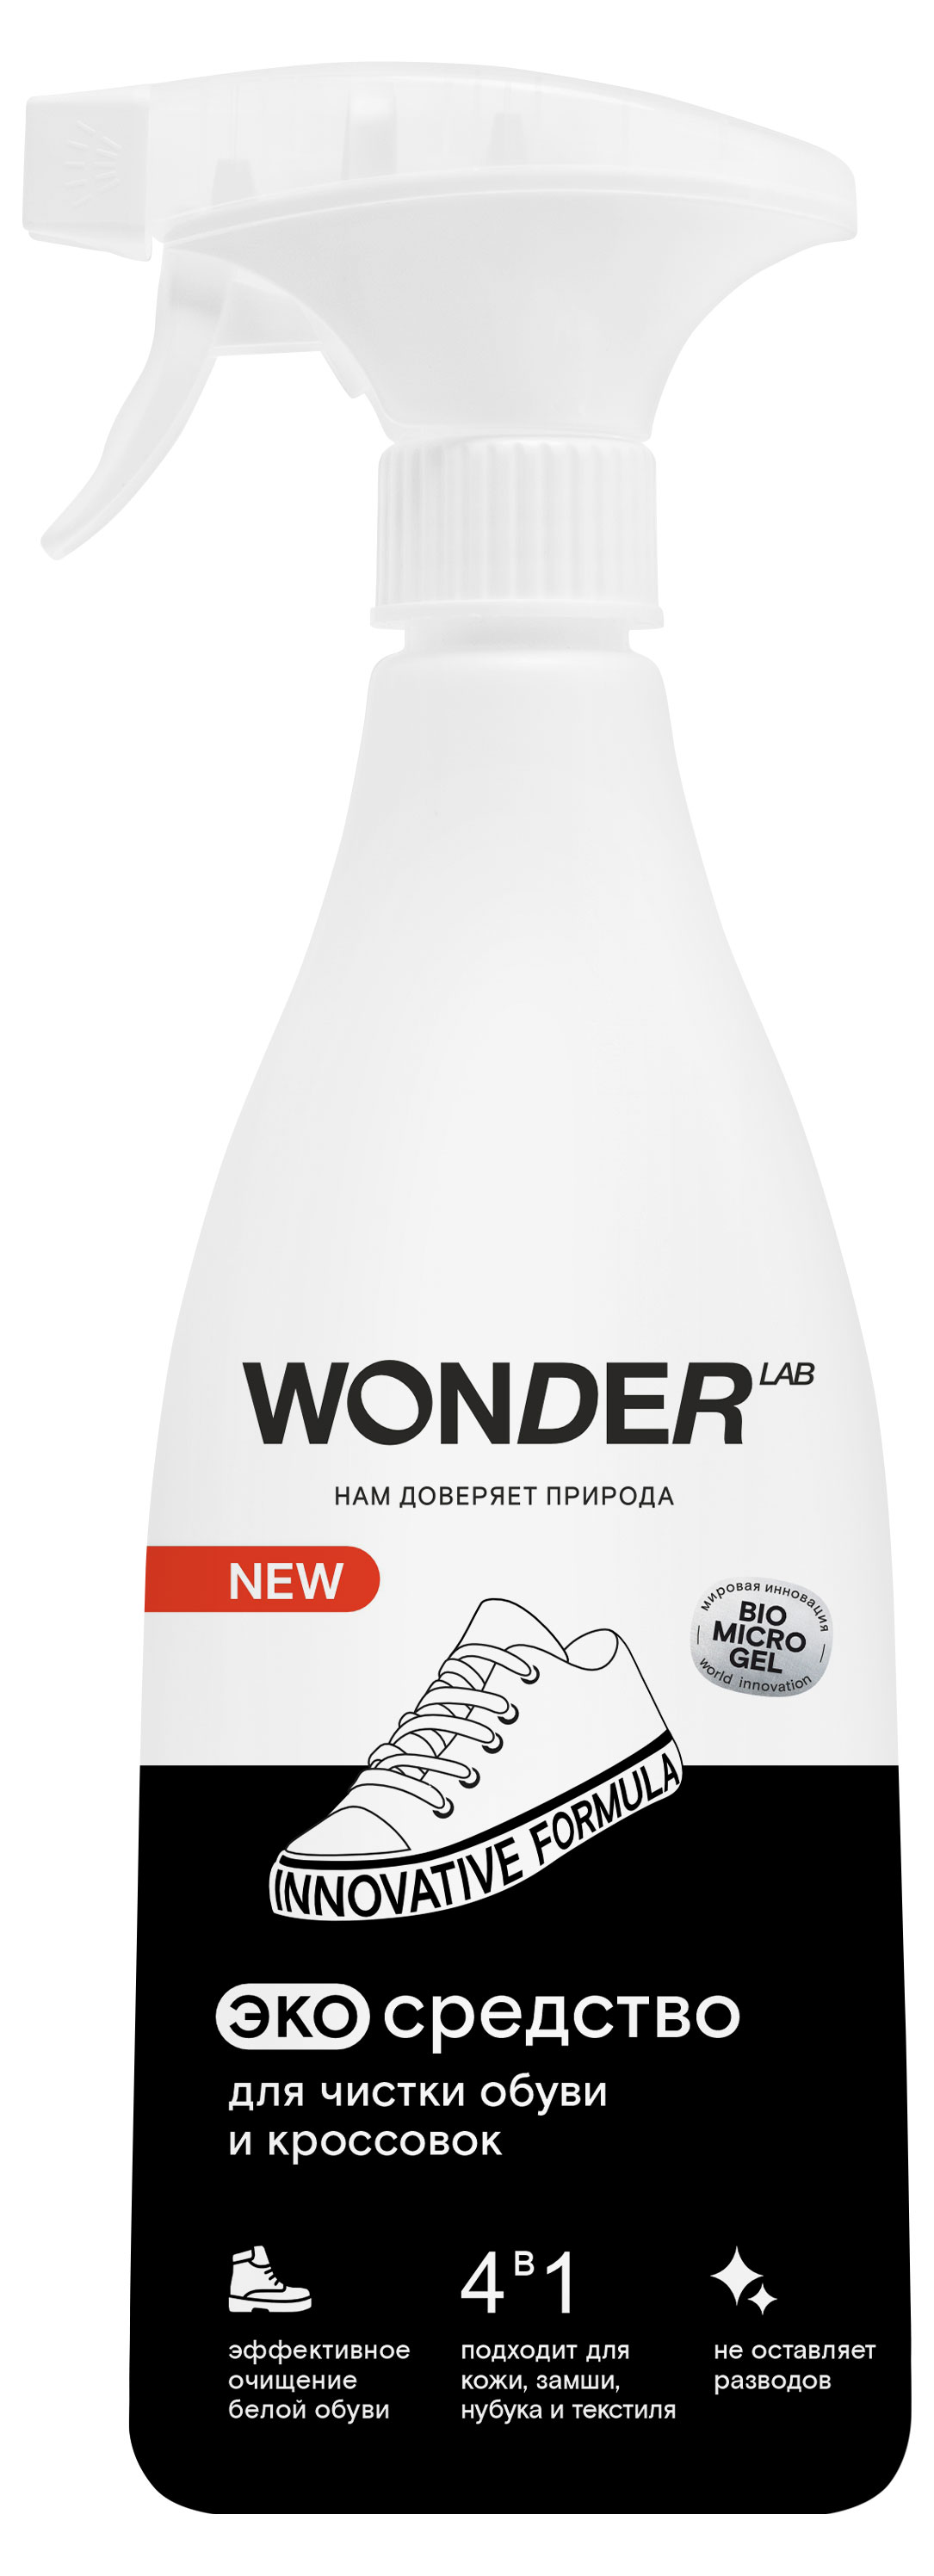 Wonder Lab | Средство для чистки обуви и кроссовок Wonder Lab, 550 мл